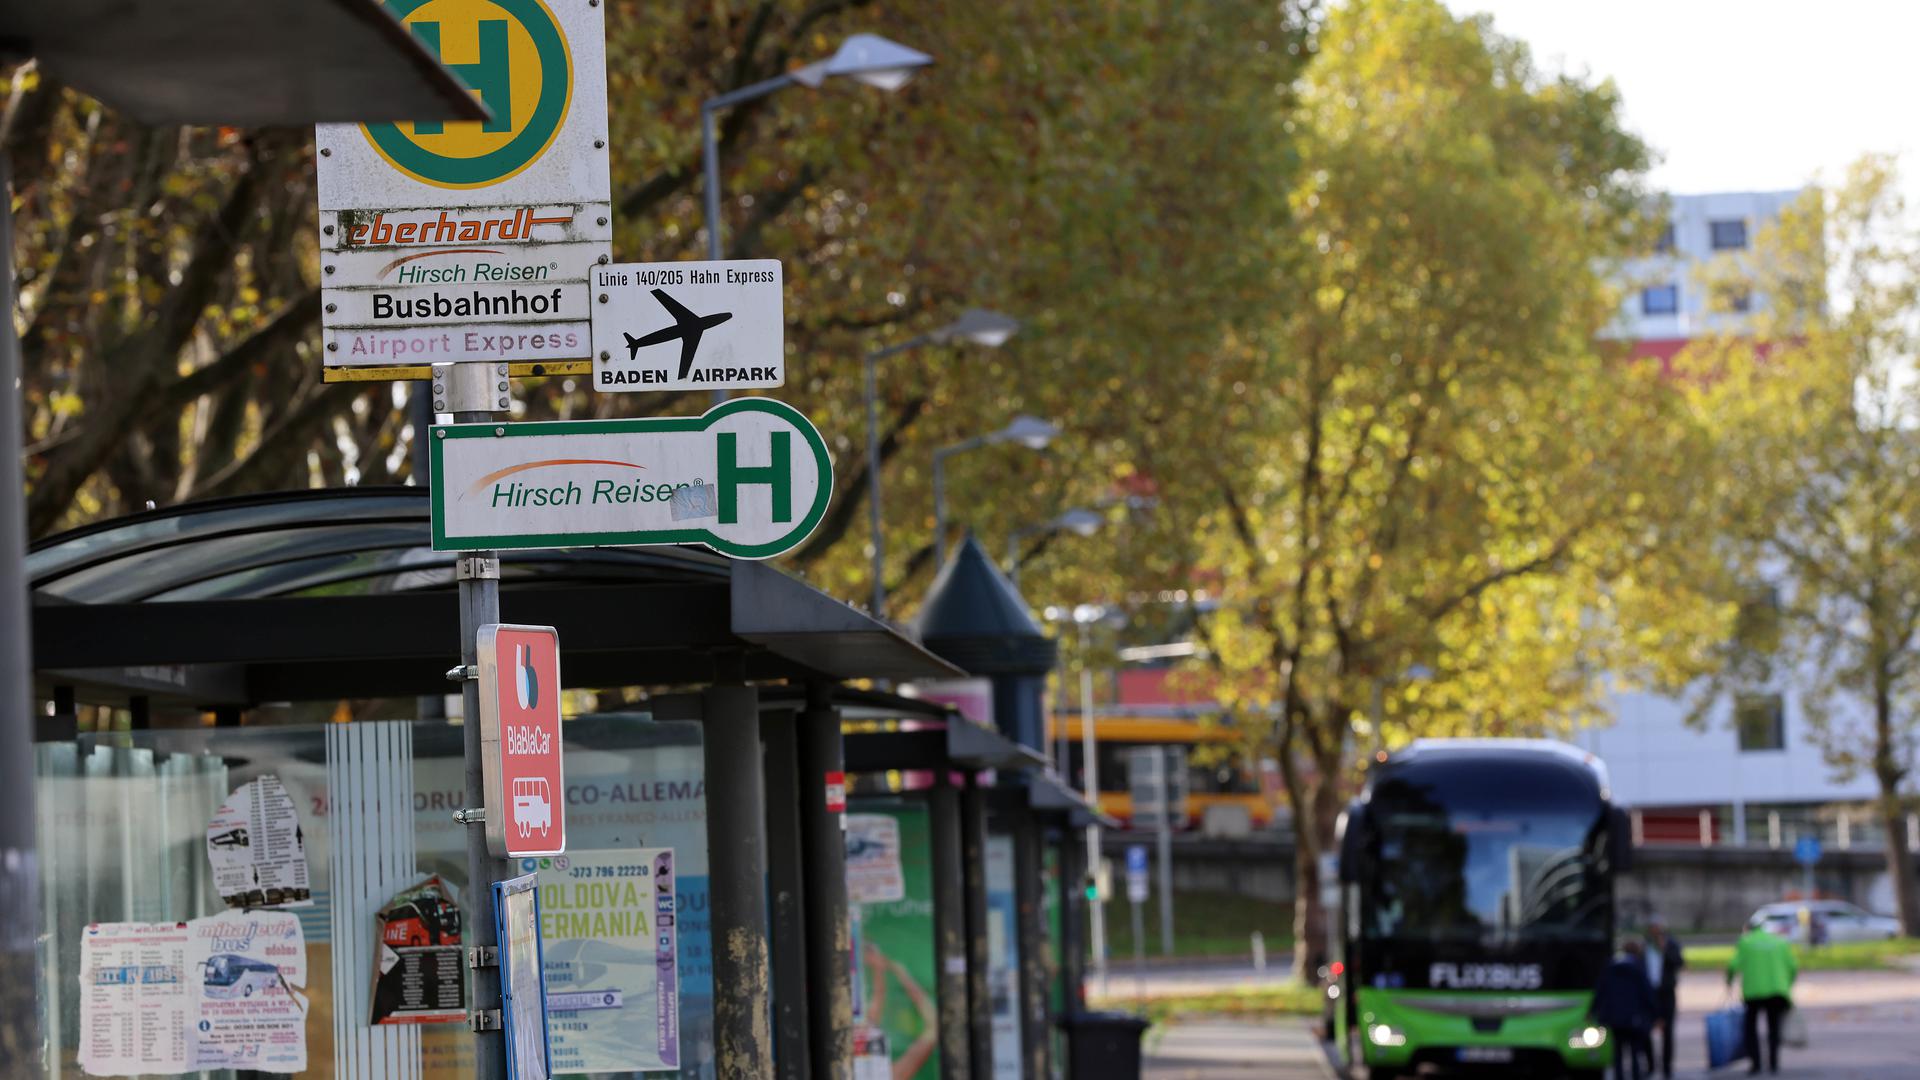 Zukunft des Busbahnhofs: Nach Ansicht der FDP-Fraktion im Gemeinderat braucht der Fernbusstopp ein neues Konzept. Die Reisenden sollen demnach von mehr Komfort profitieren.